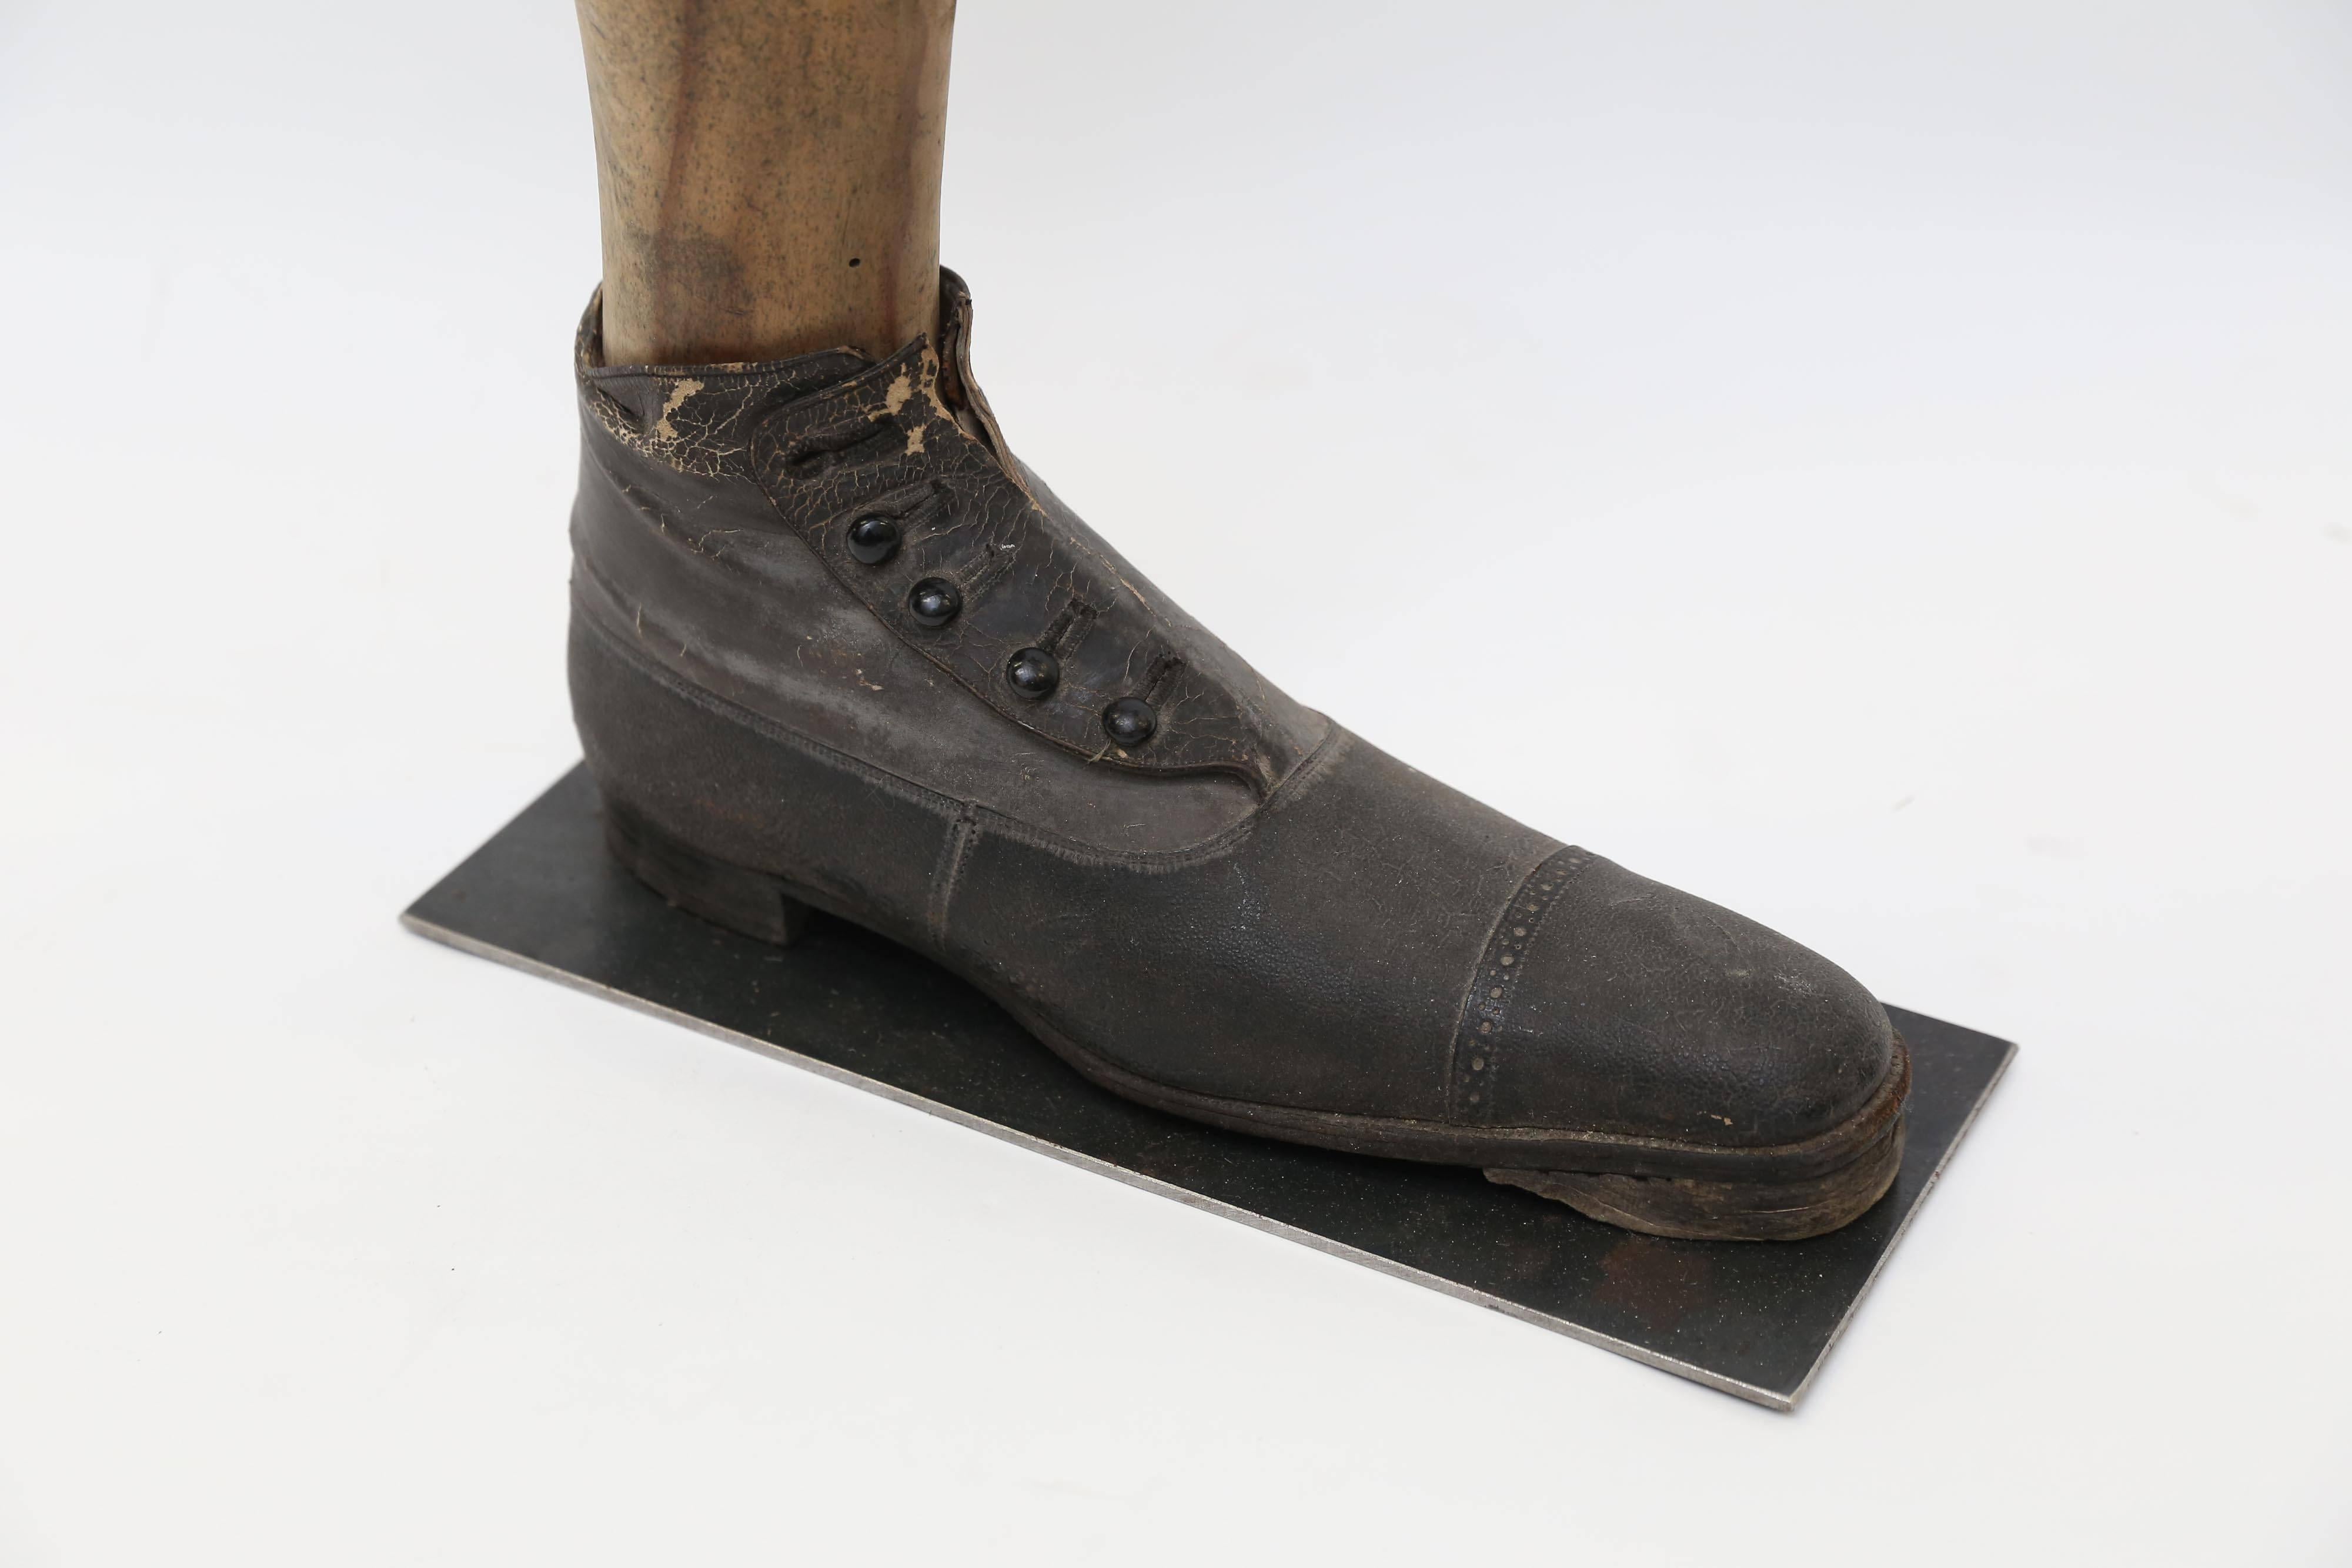 Das Bein einer hölzernen Schaufensterpuppe mit einem Herrenknopfschuh aus der viktorianischen Ära, montiert auf einem Metallsockel. Der fünfknöpfige Schuh ist aus fein genähtem schwarzem Leder mit einer harten Ledersohle. Einer der Knöpfe fehlt. Auf